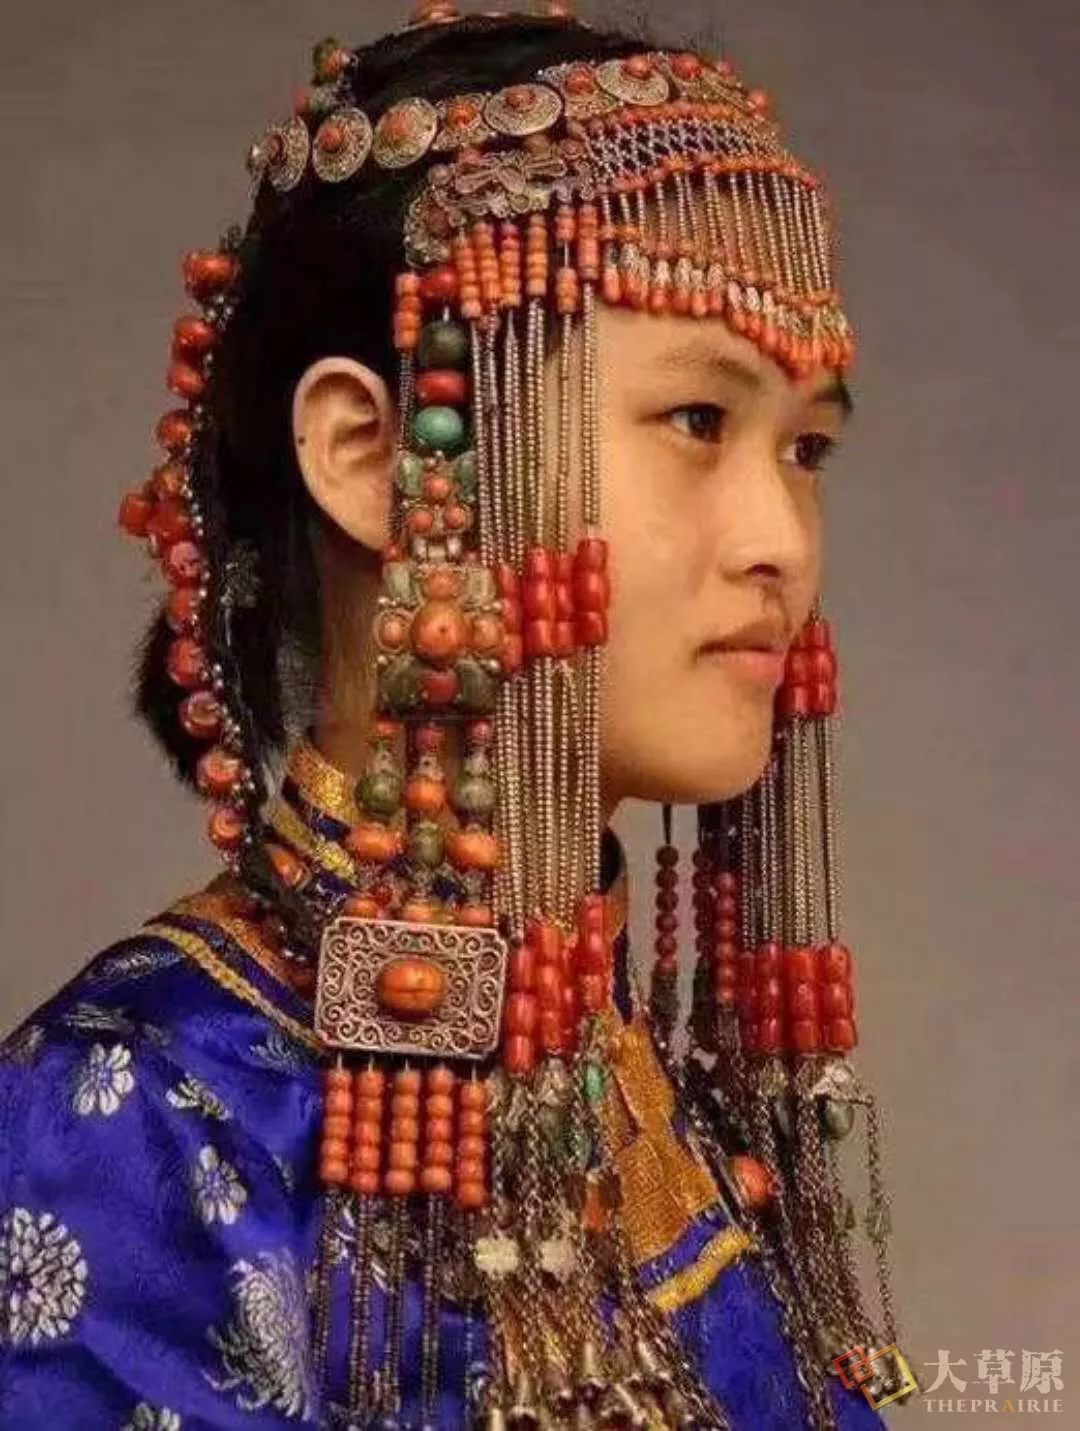 蒙古族 鄂尔多斯美女 - 半炷尘香 - 图虫网 - 最好的摄影师都在这